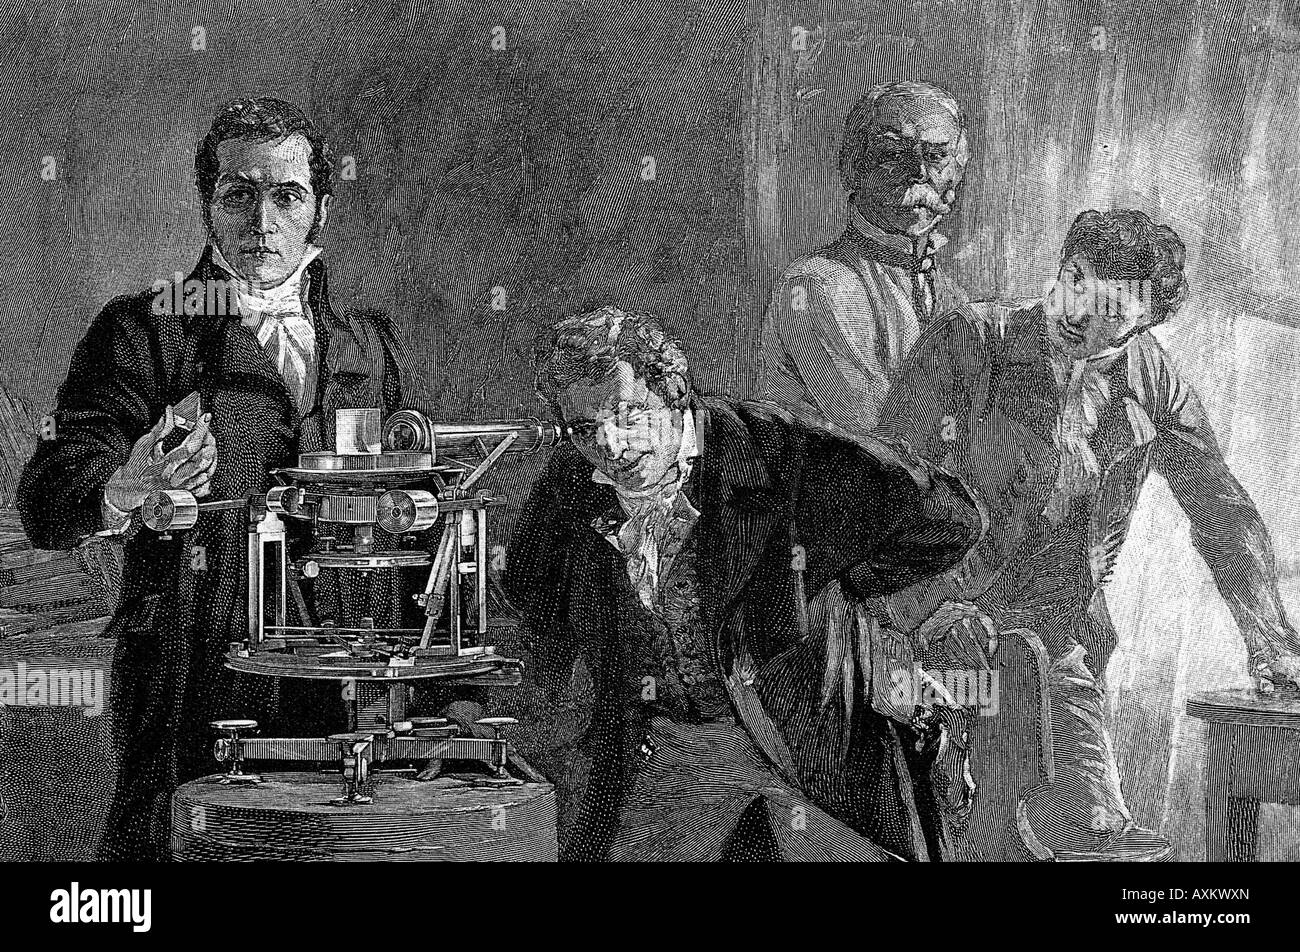 JOSEF von Fraunhofer à gauche démontrant son spectrometer à Munich en 1814 Banque D'Images